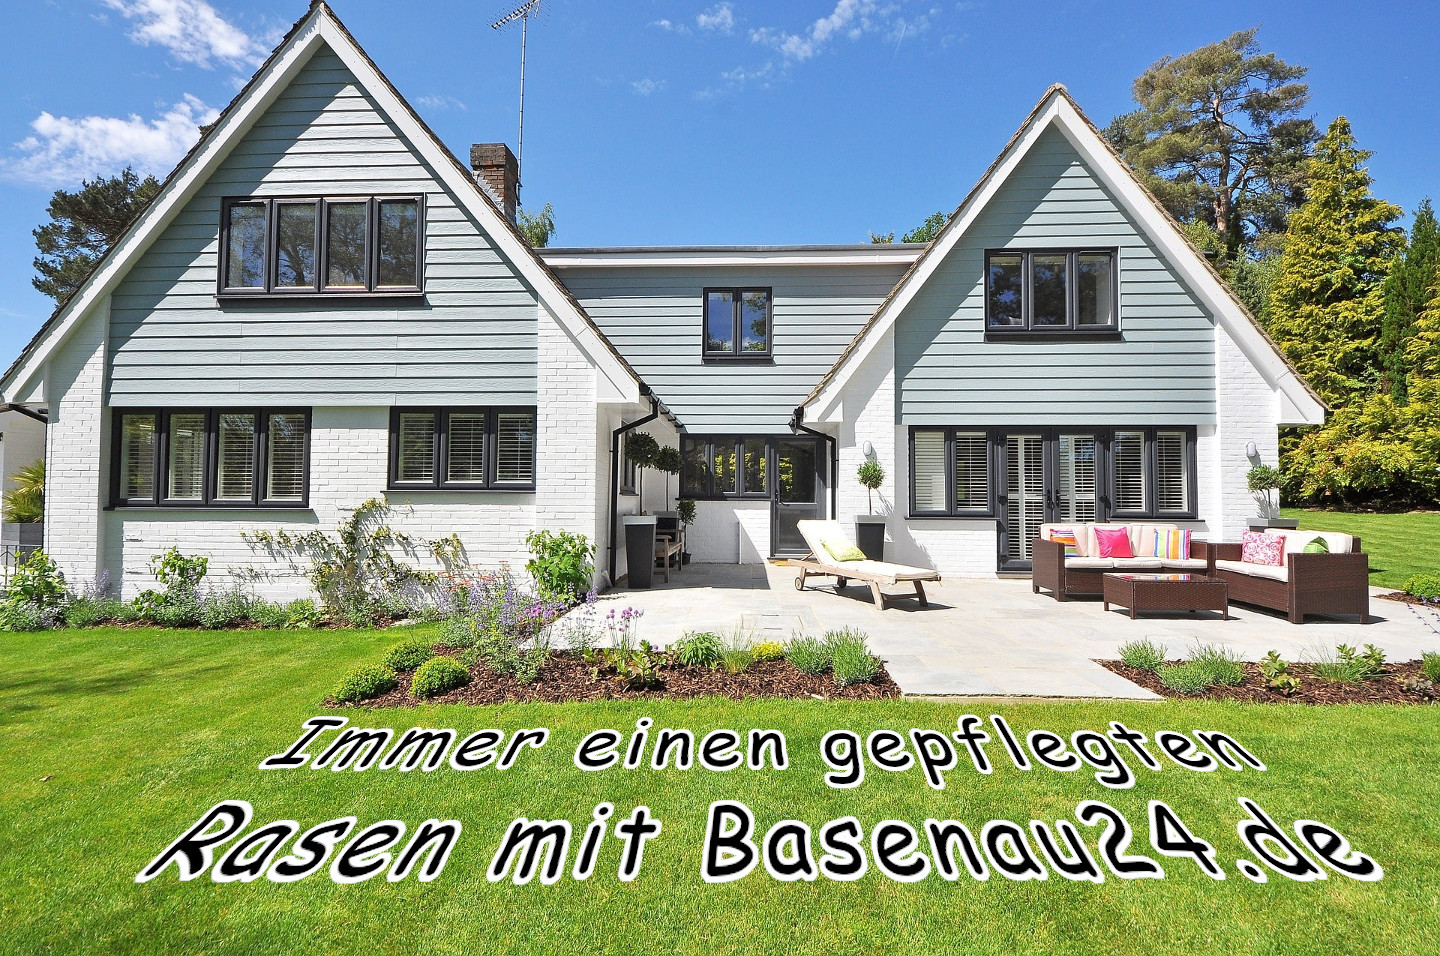 Den Rasen richtig pflegen mit Basenau24.de und dem passenden Mähroboter